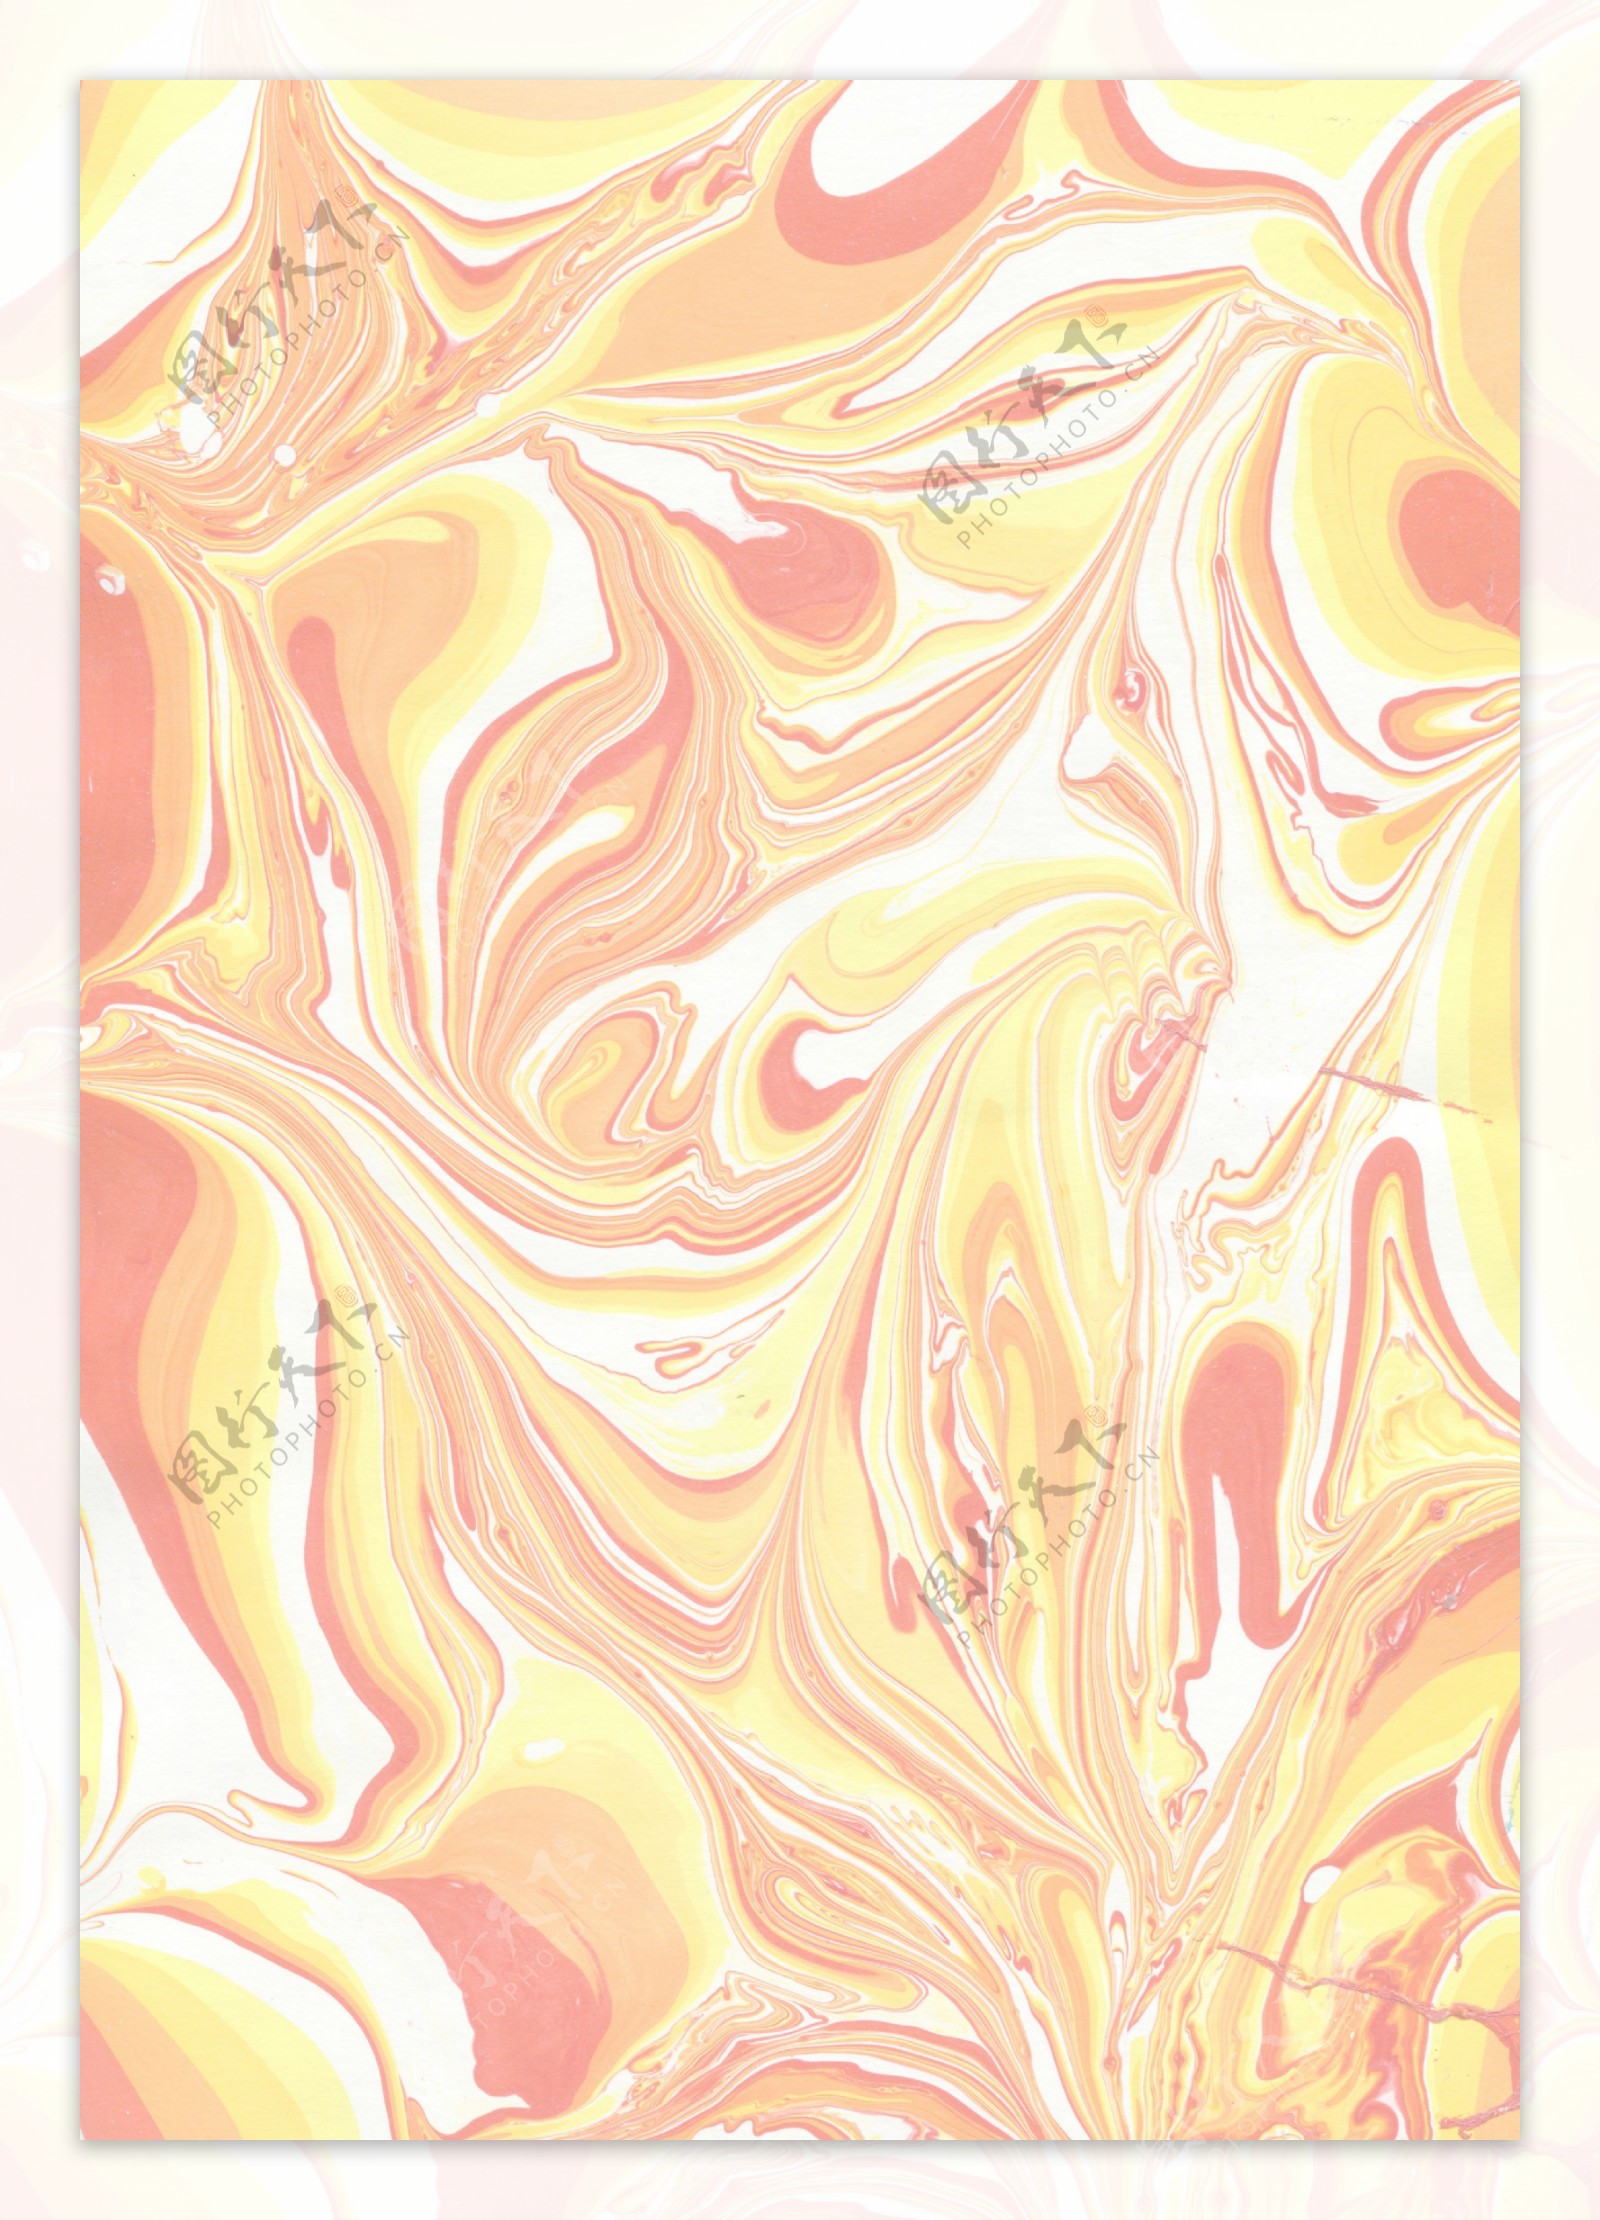 热情明亮橙黄色壁纸图案装饰设计